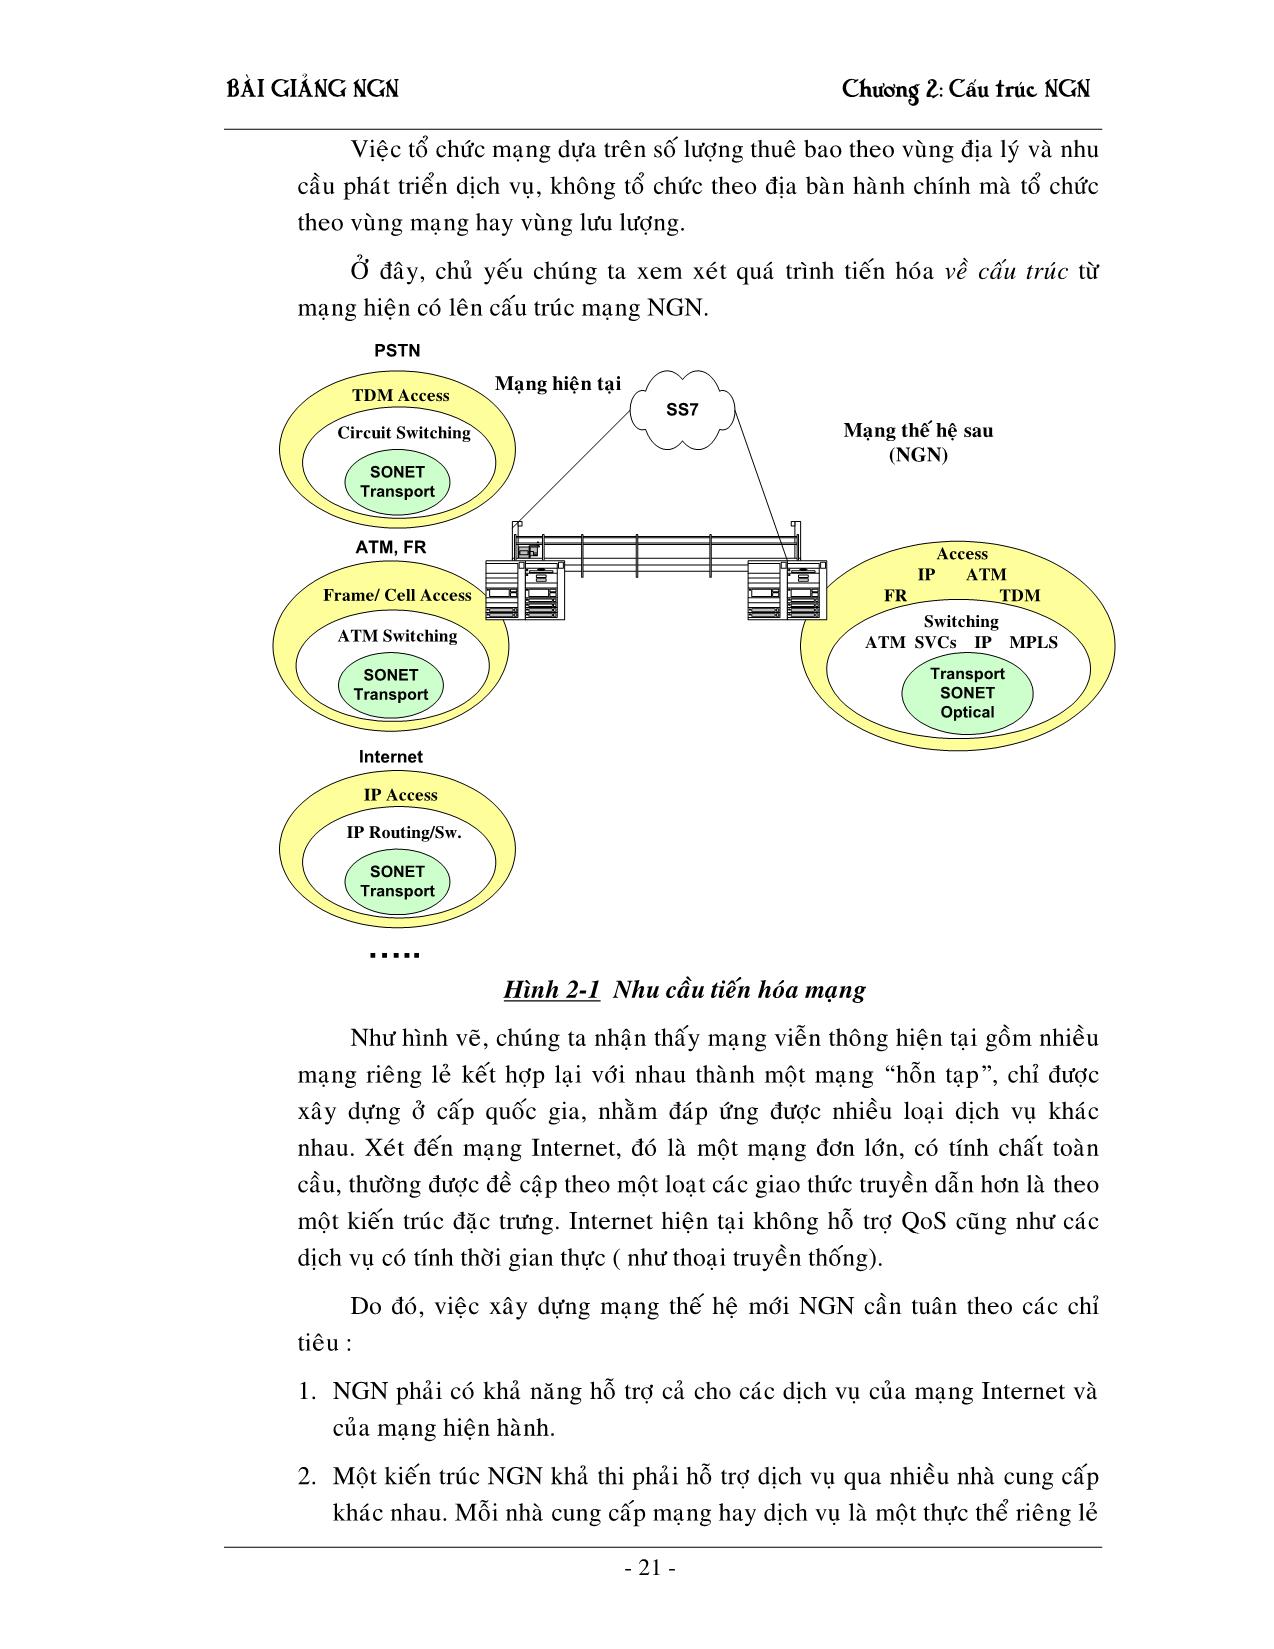 Giáo trình NGN - Chương 2: Cấu trúc mạng NGN trang 2